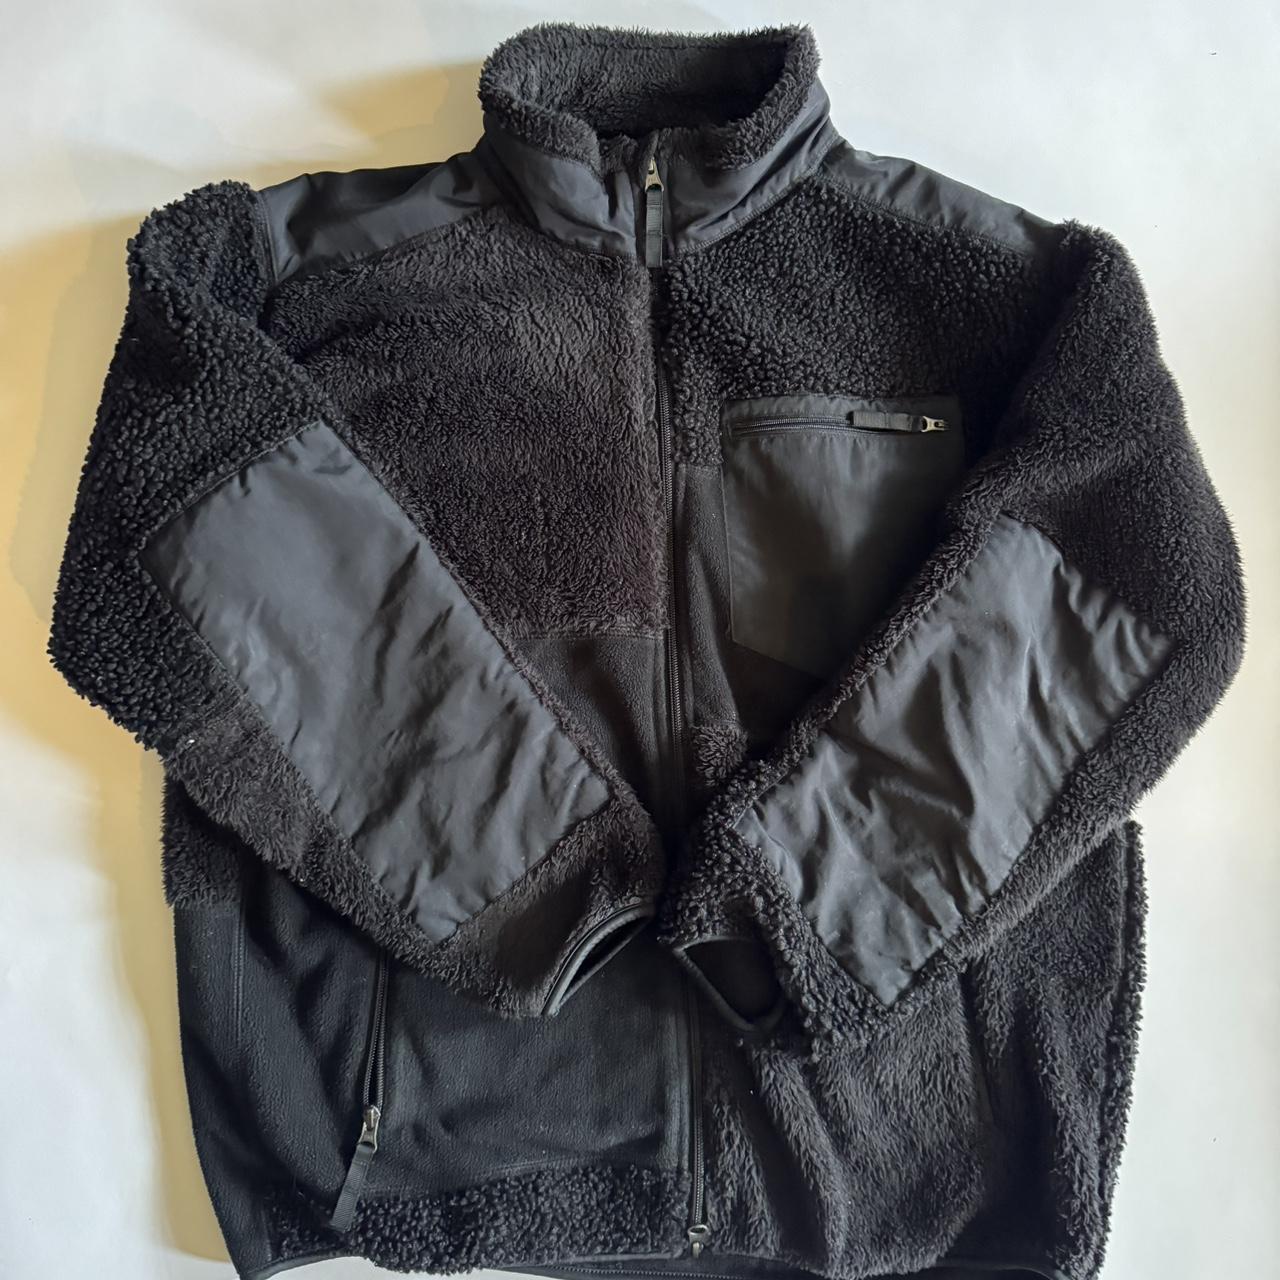 Uniqlo x Engineered Garments - fleece zip... - Depop